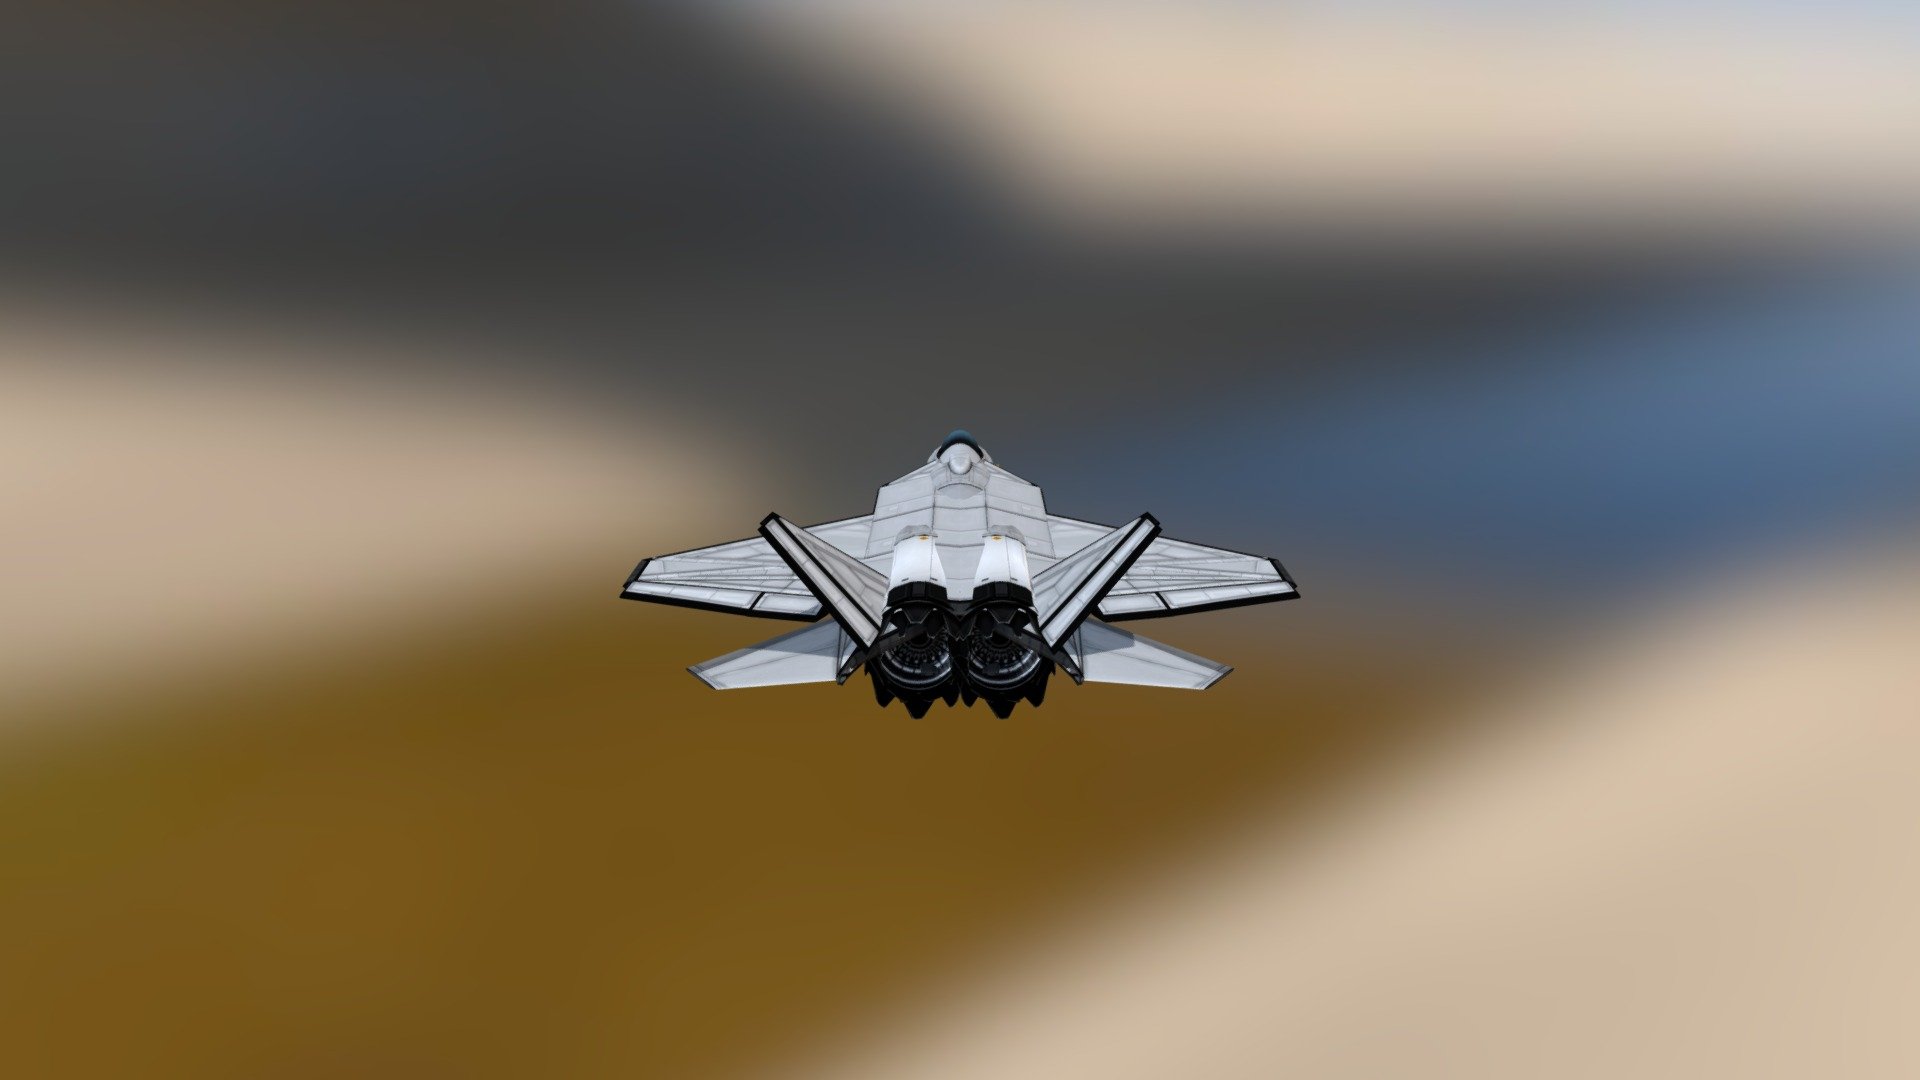 [cb_co] F-22 Raptor MRK V